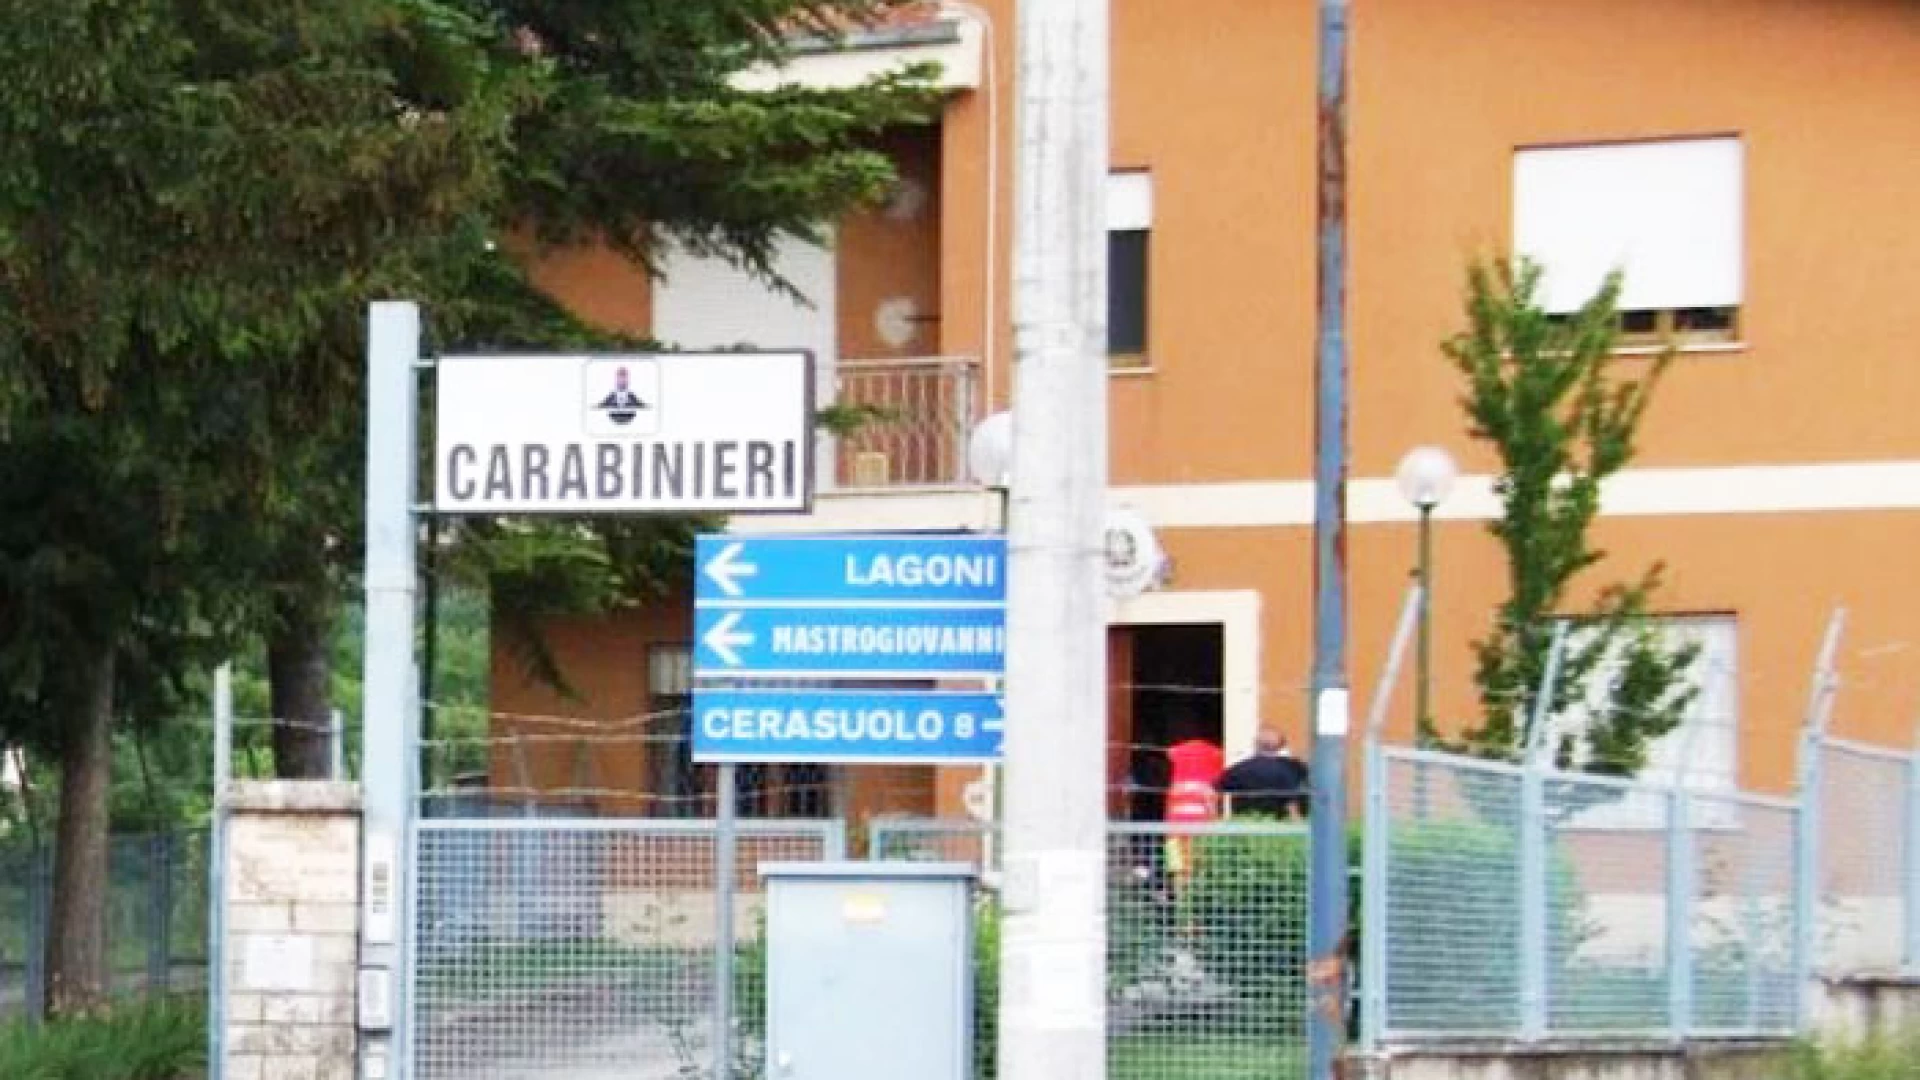 Filignano: Residenze “fantasma” per truffare le compagnie assicurative, due persone denunciate dai Carabinieri.